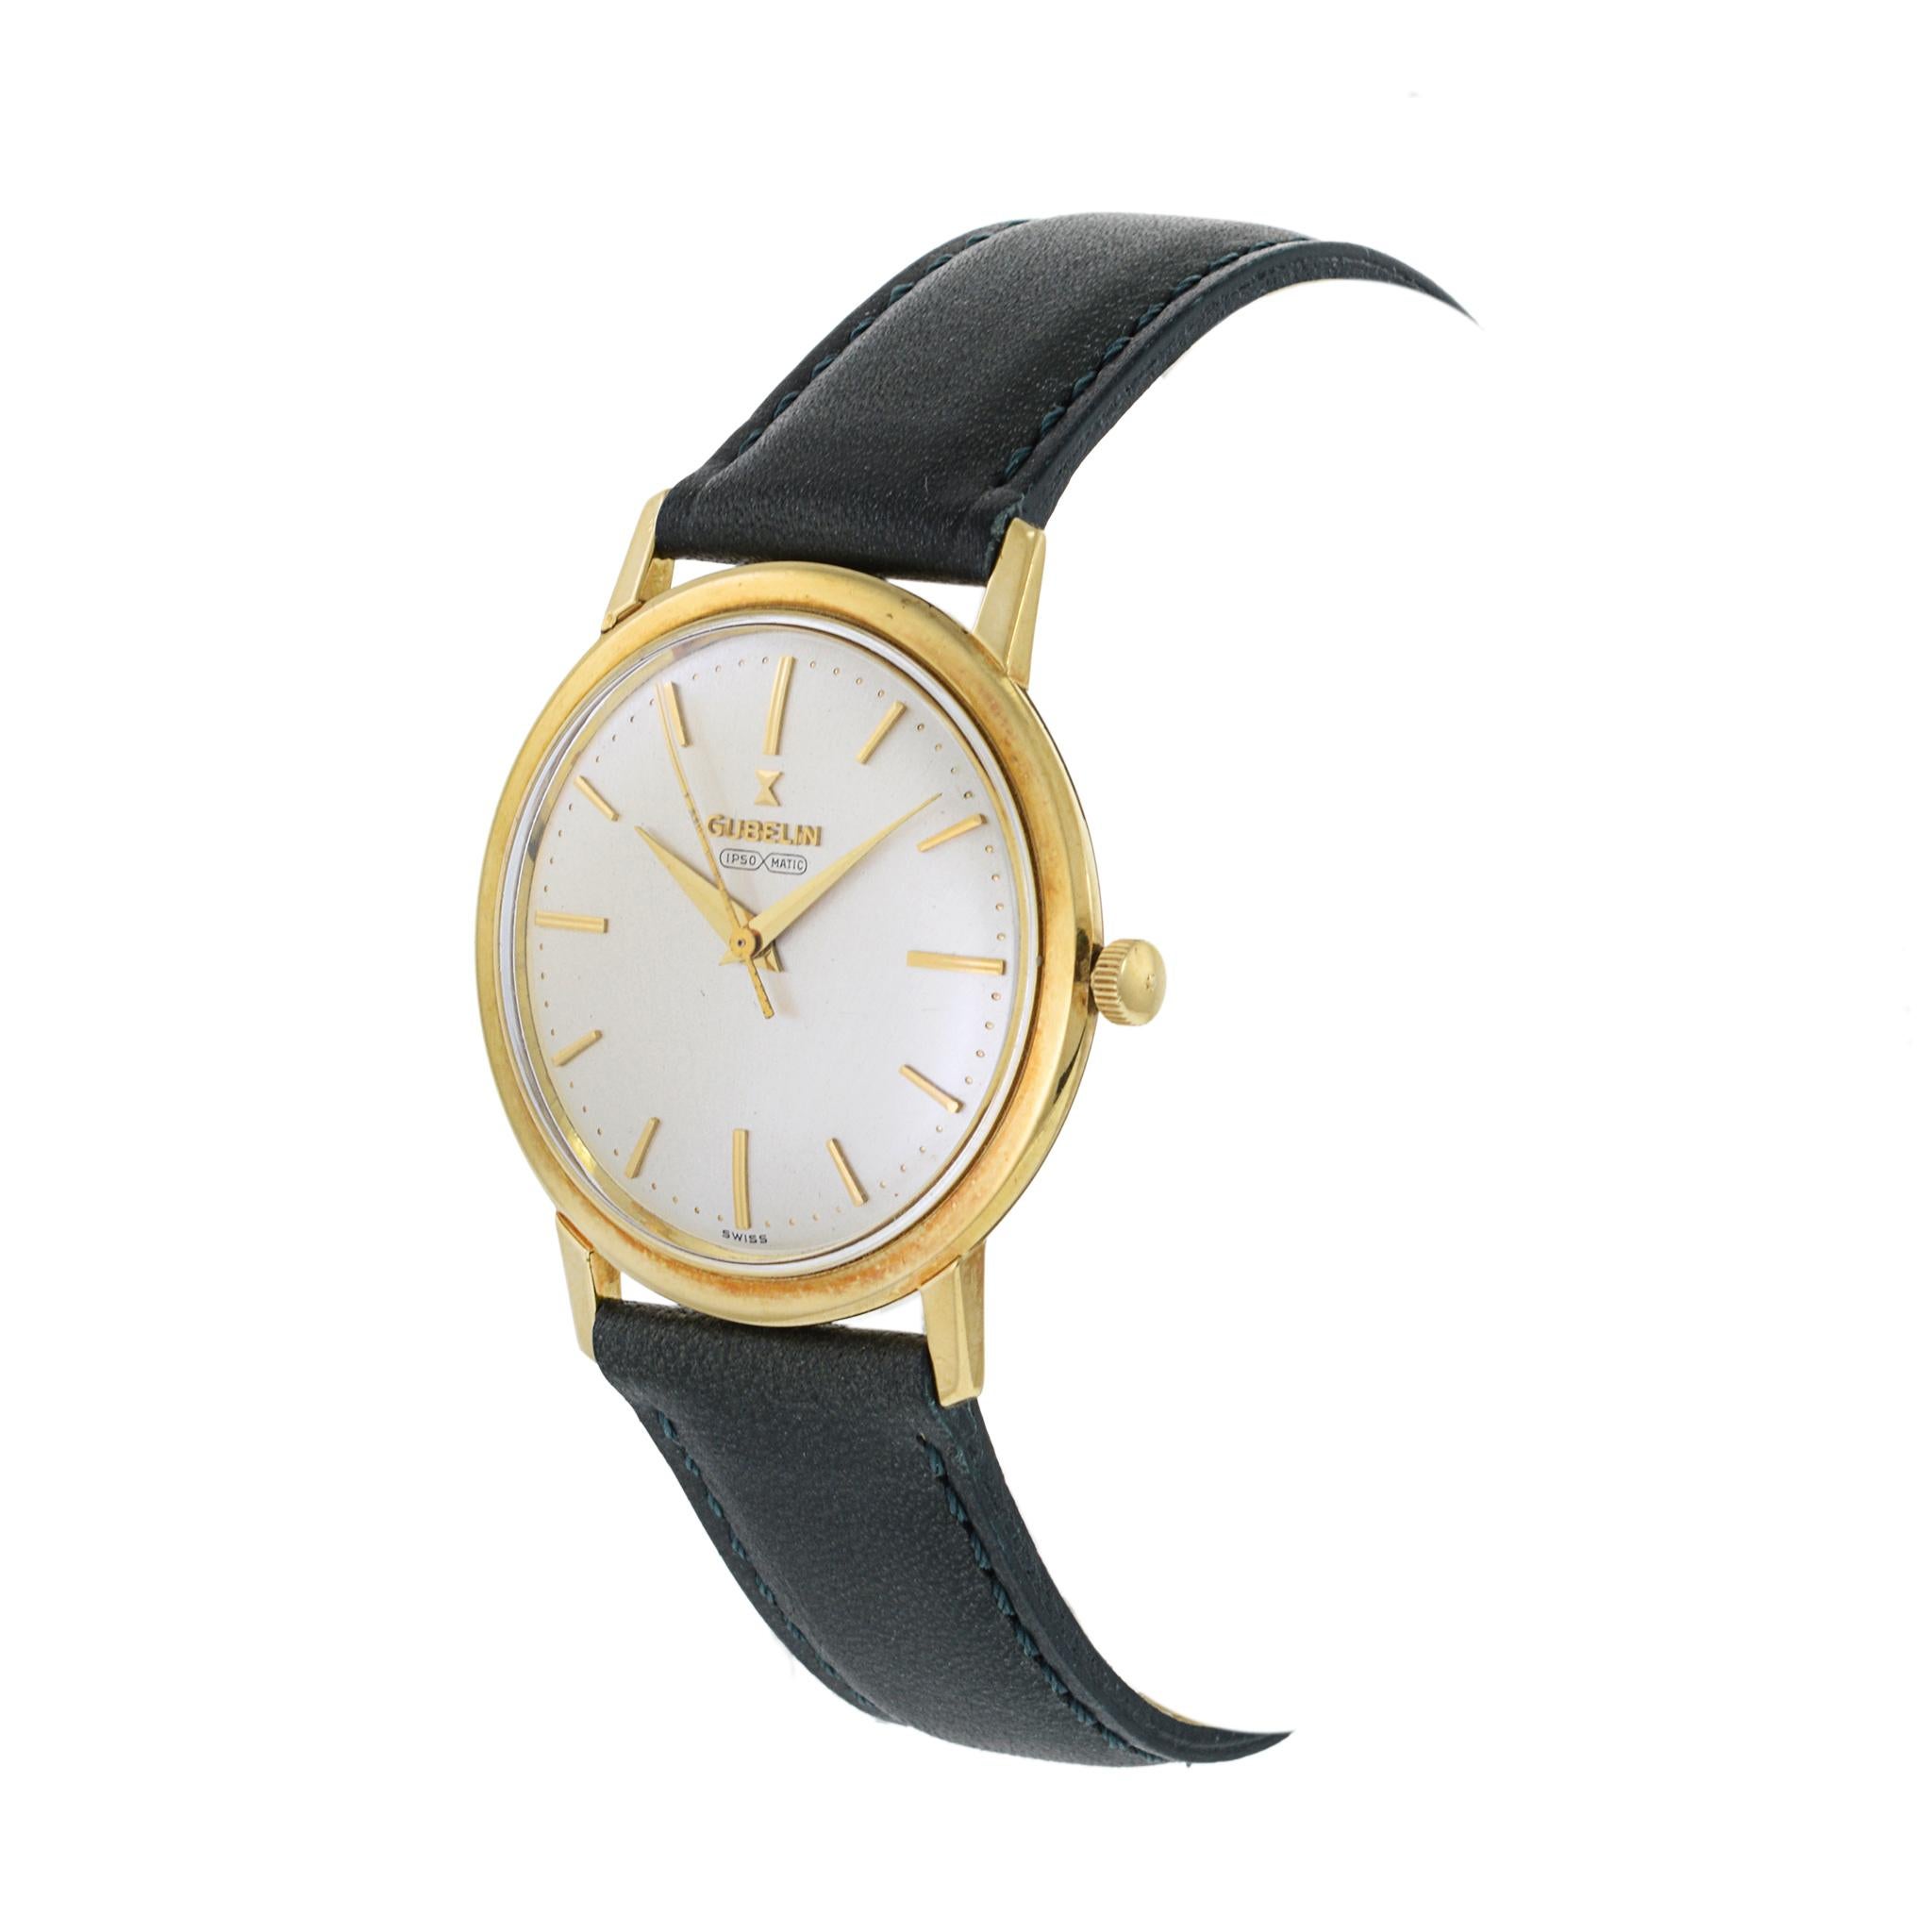 Dies ist ein Beispiel für die Uhrmacherkunst der 1960er Jahre in ihrer schönsten Form. Diese Gubelin Ipso Matic 18K Uhr ist eine der begehrtesten Uhren dieser Zeit.

Diese Uhr hat ein hochwertiges 18k Gelbgold Spillmann Gehäuse mit einem Durchmesser